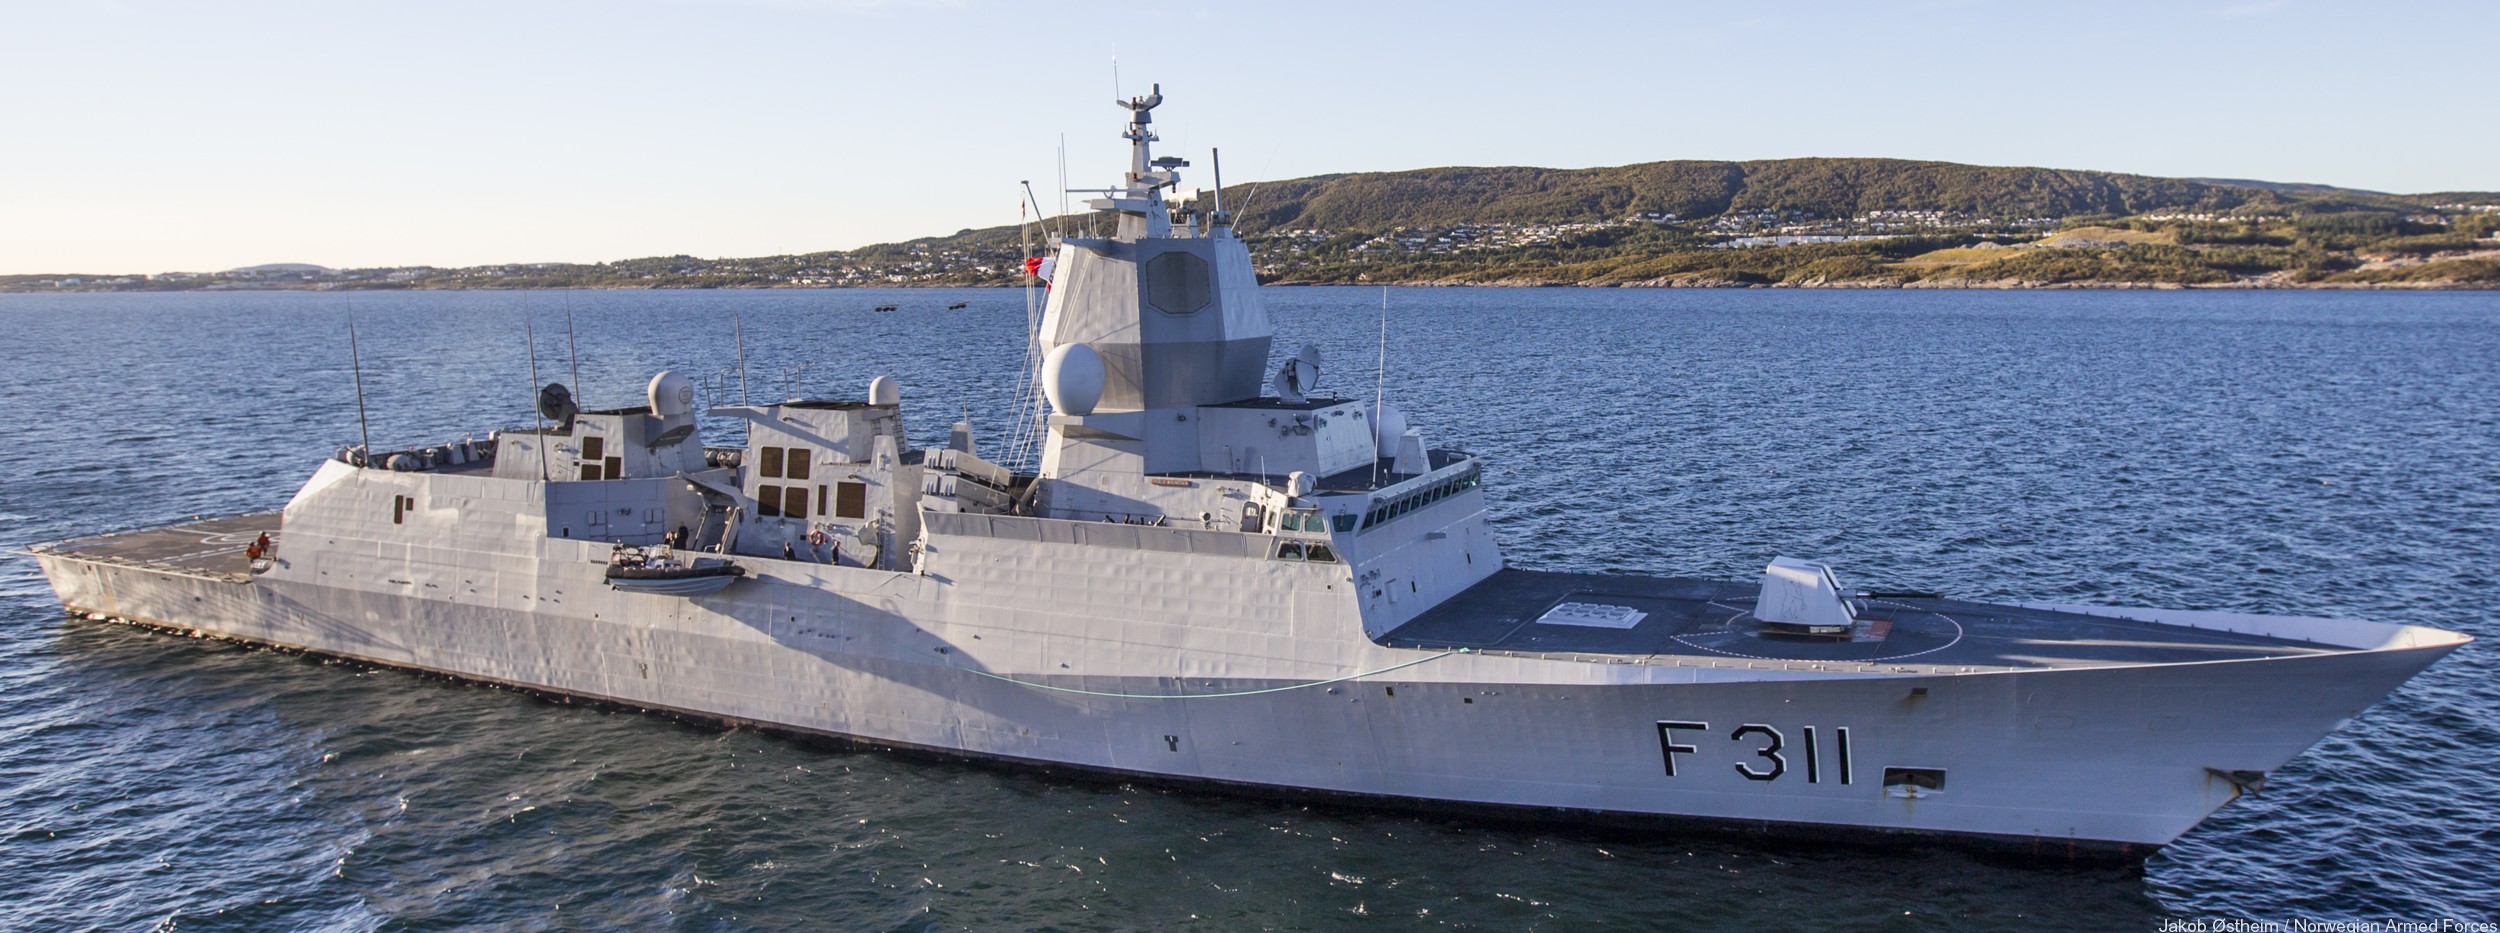 f-311 hnoms roald amundsen knm nansen class frigate royal norwegian navy sjoforsvaret 39